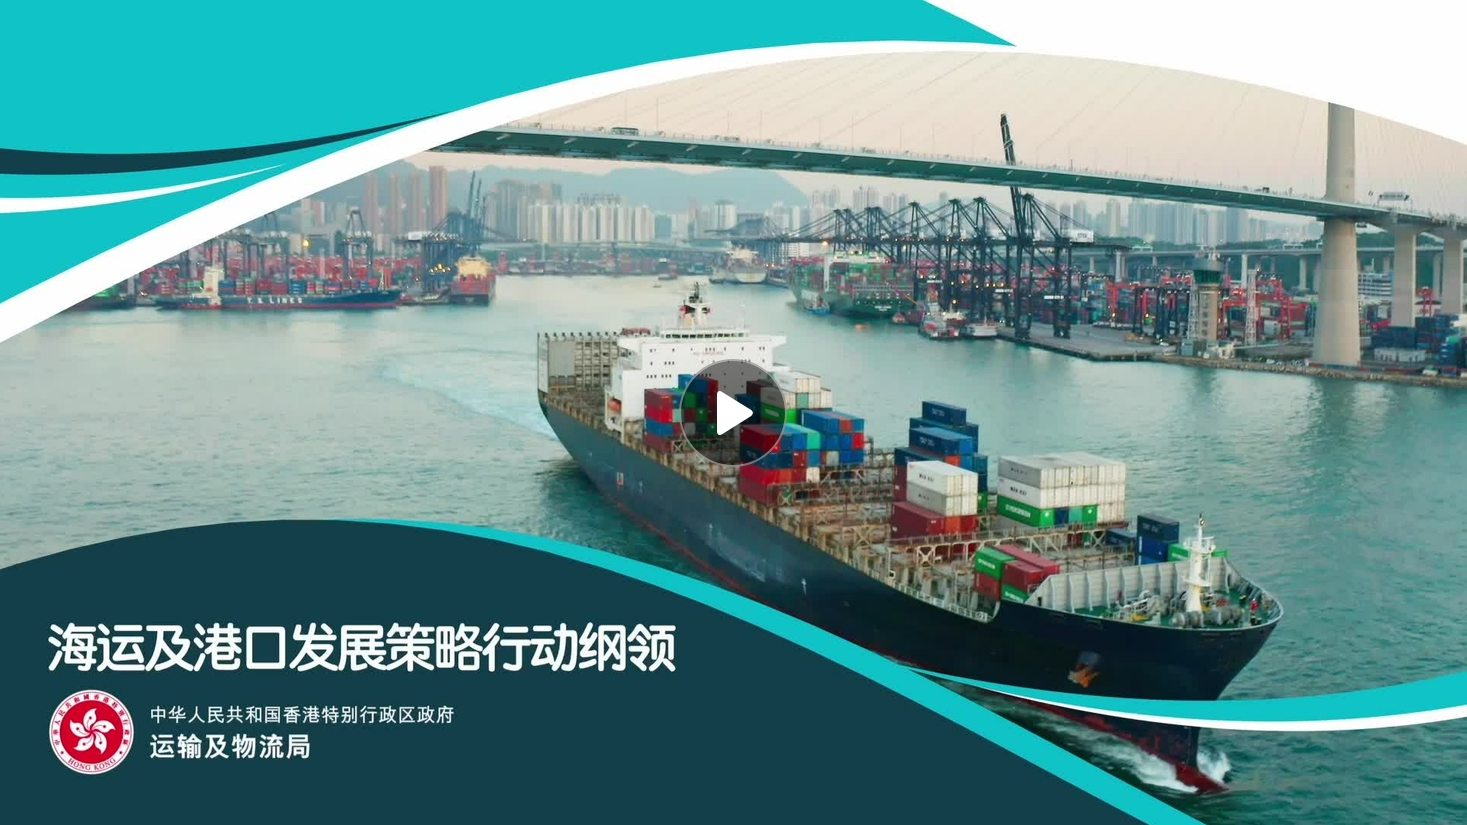 《海运及港口发展策略行动纲领》宣传片